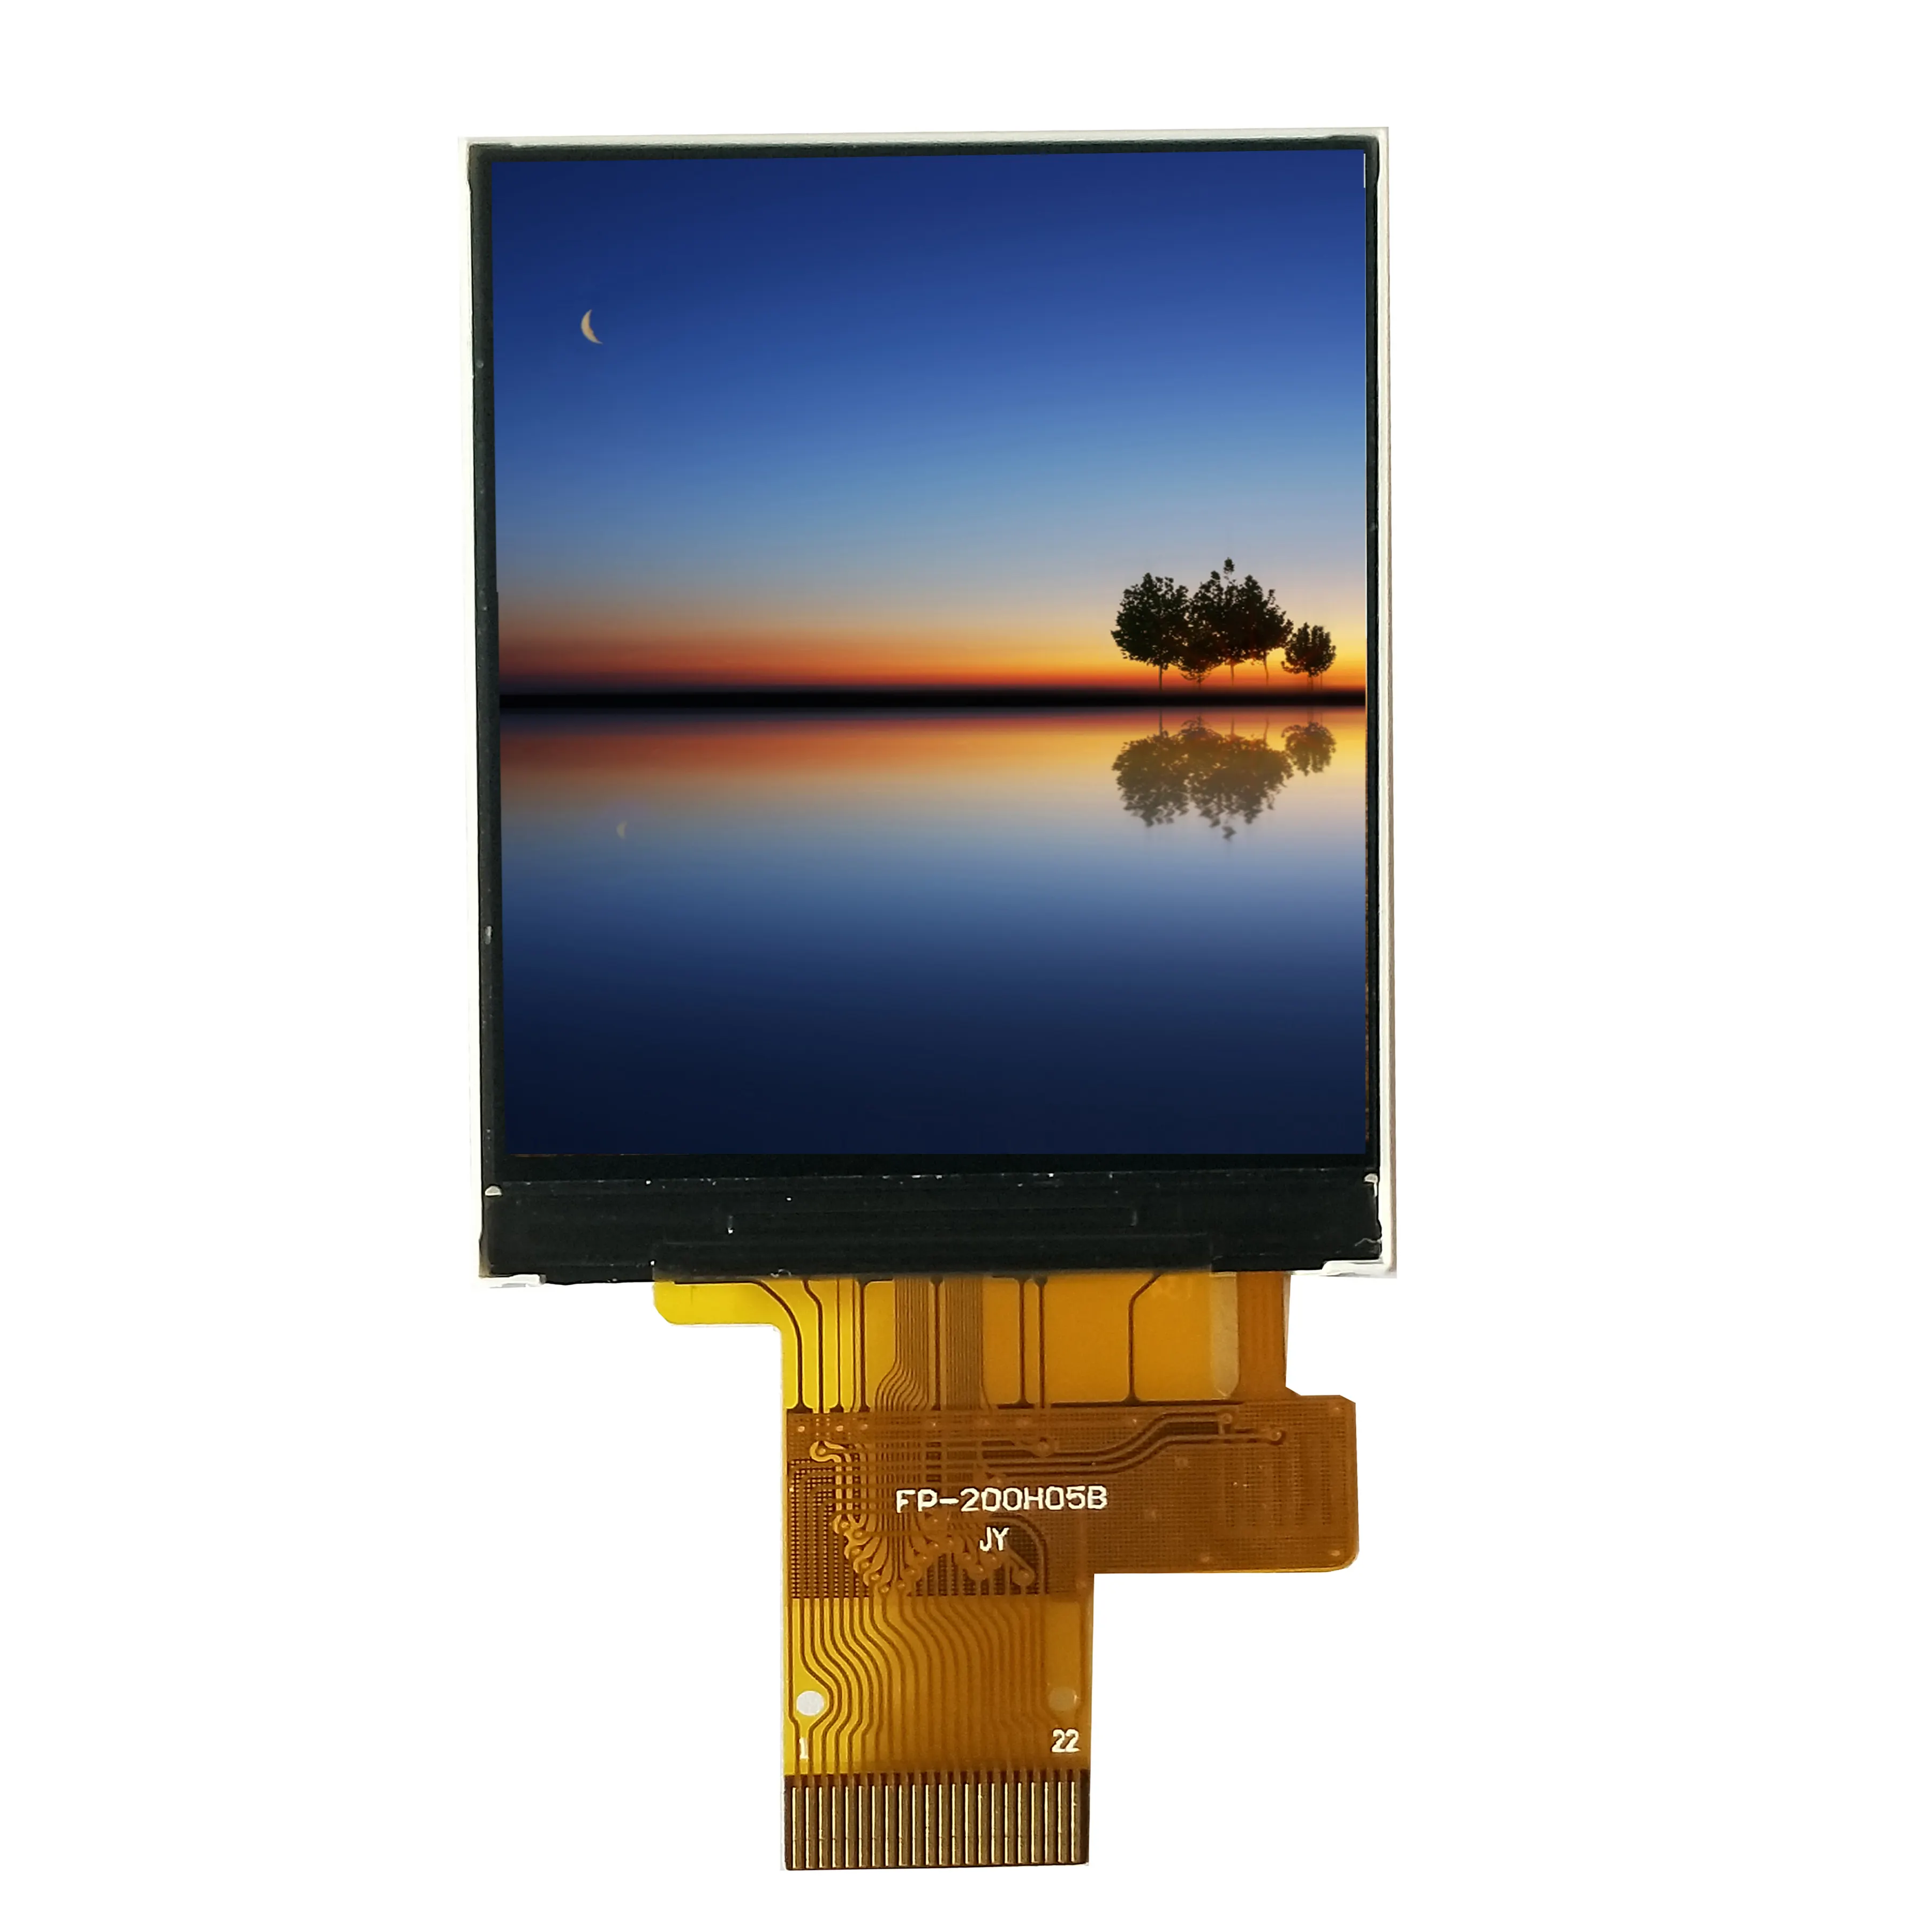 2 인치 240RGBx320 TFT 22pin 소형 TFT LCD 디스플레이 터치 스크린 옵션 사용 가능